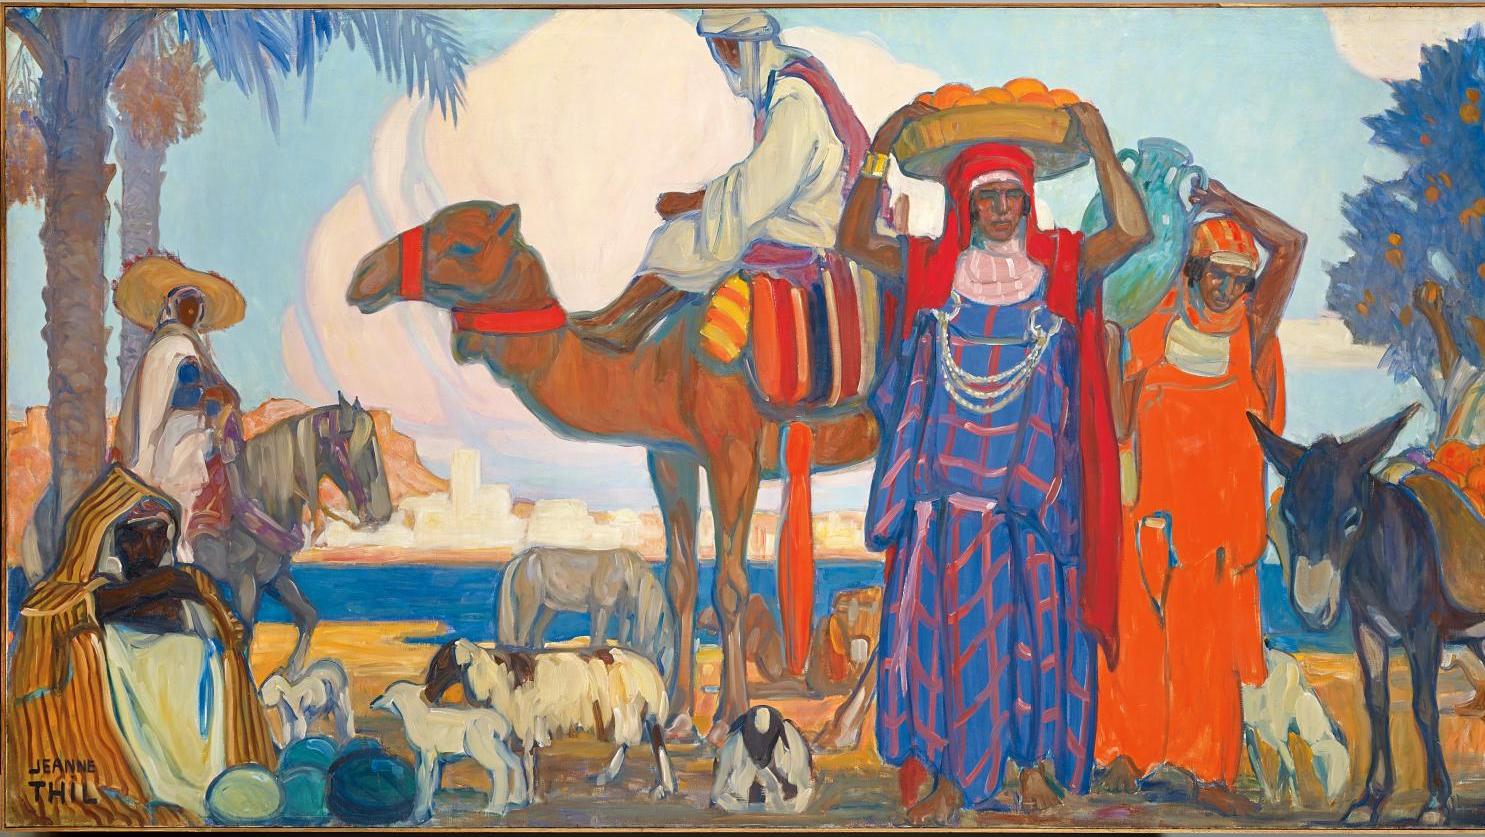 Jeanne Thil (1887-1968), Tunisie, 1935 huile sur toile, 160 x 310 cm, détail, musée... Jeanne Thil s’offre un one-woman show à Calais